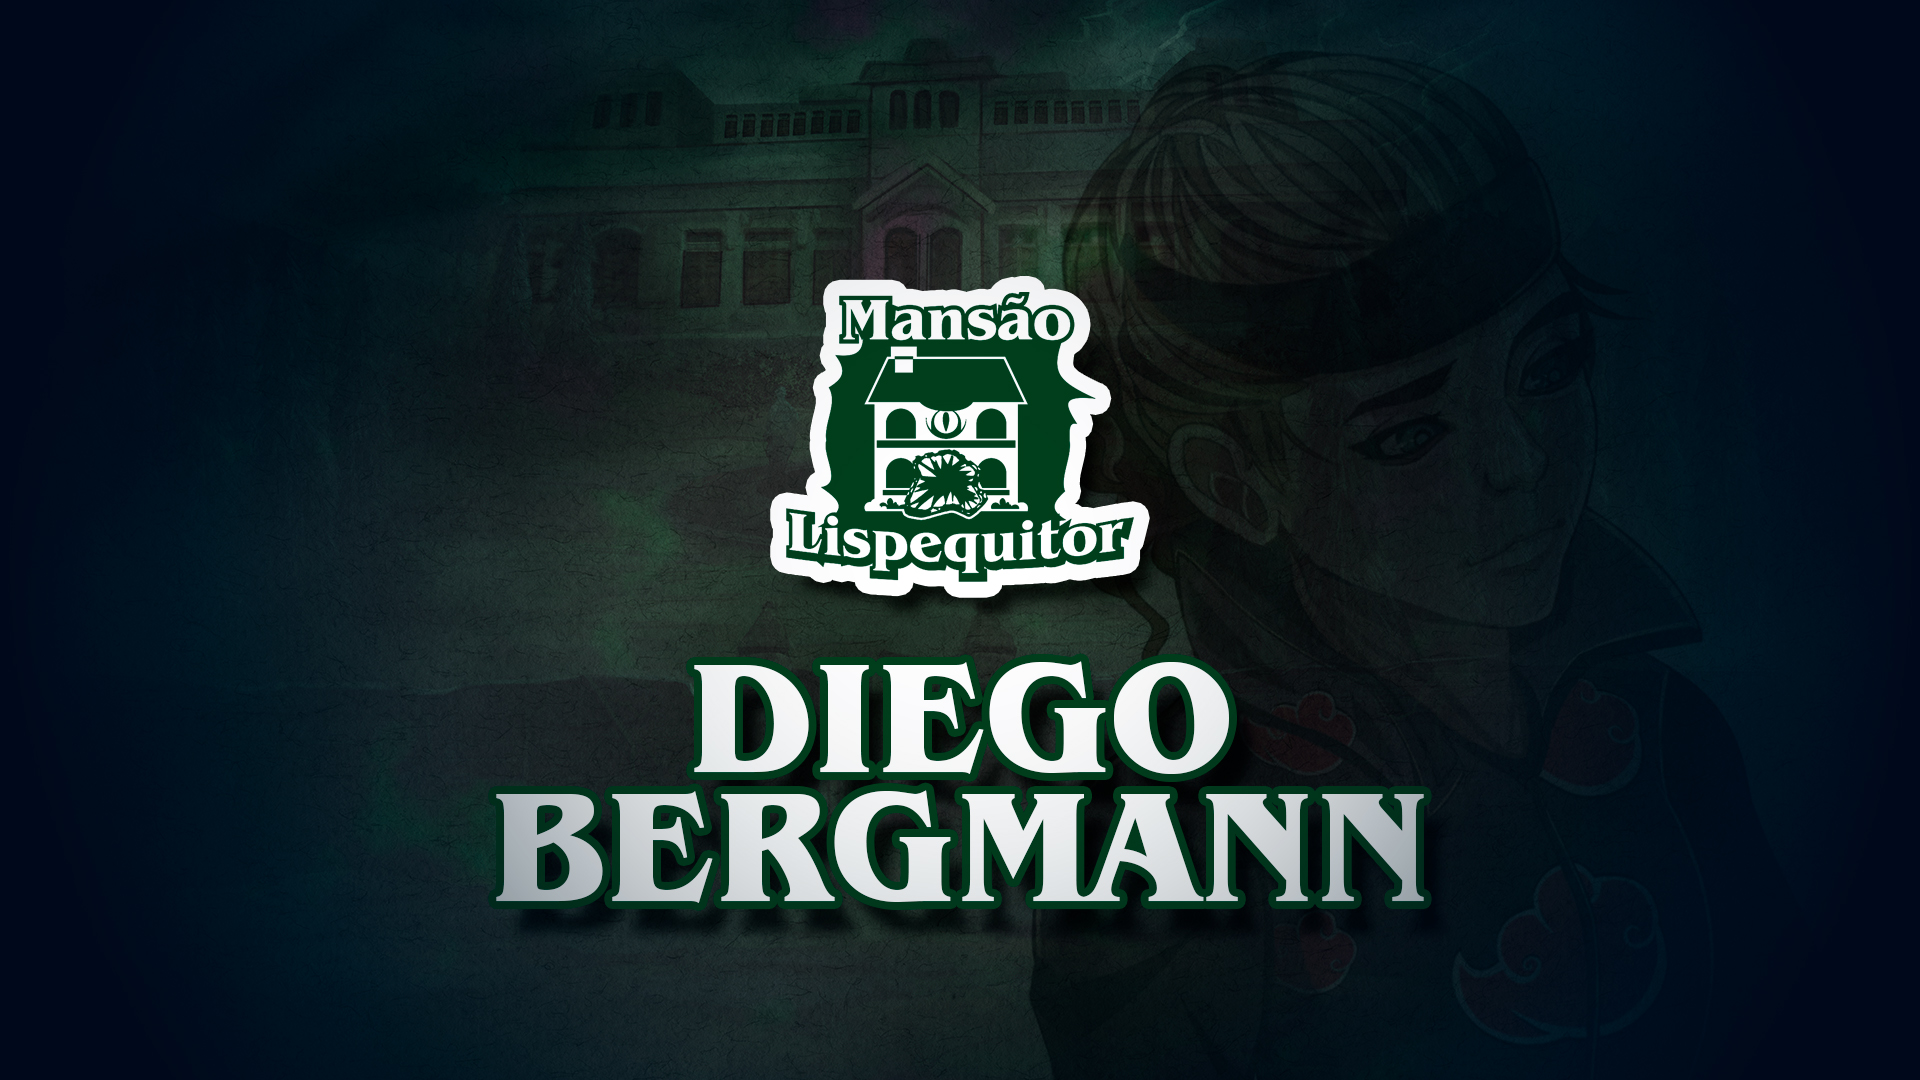 Diego Bergmann